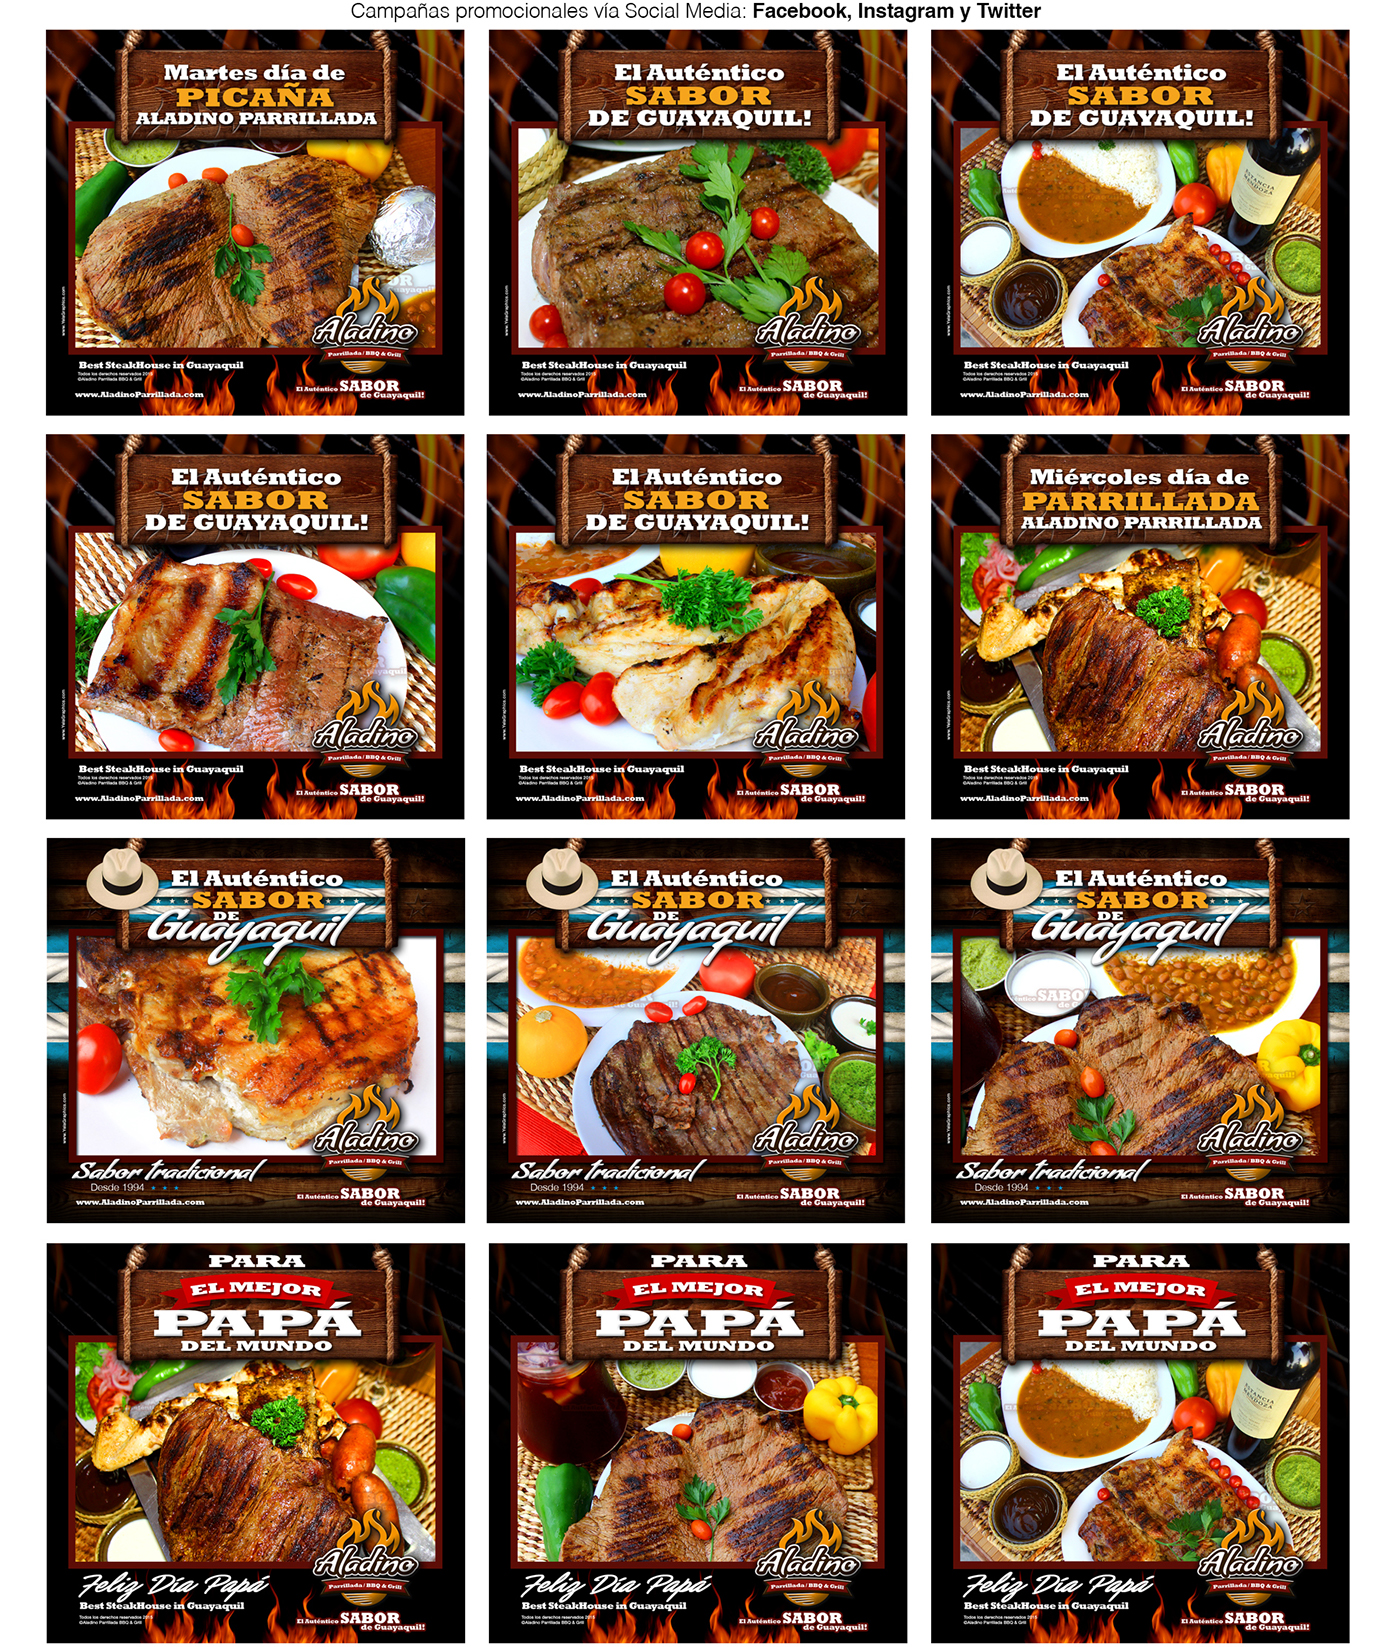 grill BBQ logo folleto brochure menu Ecuador guayaquil Tradició Traditional Food